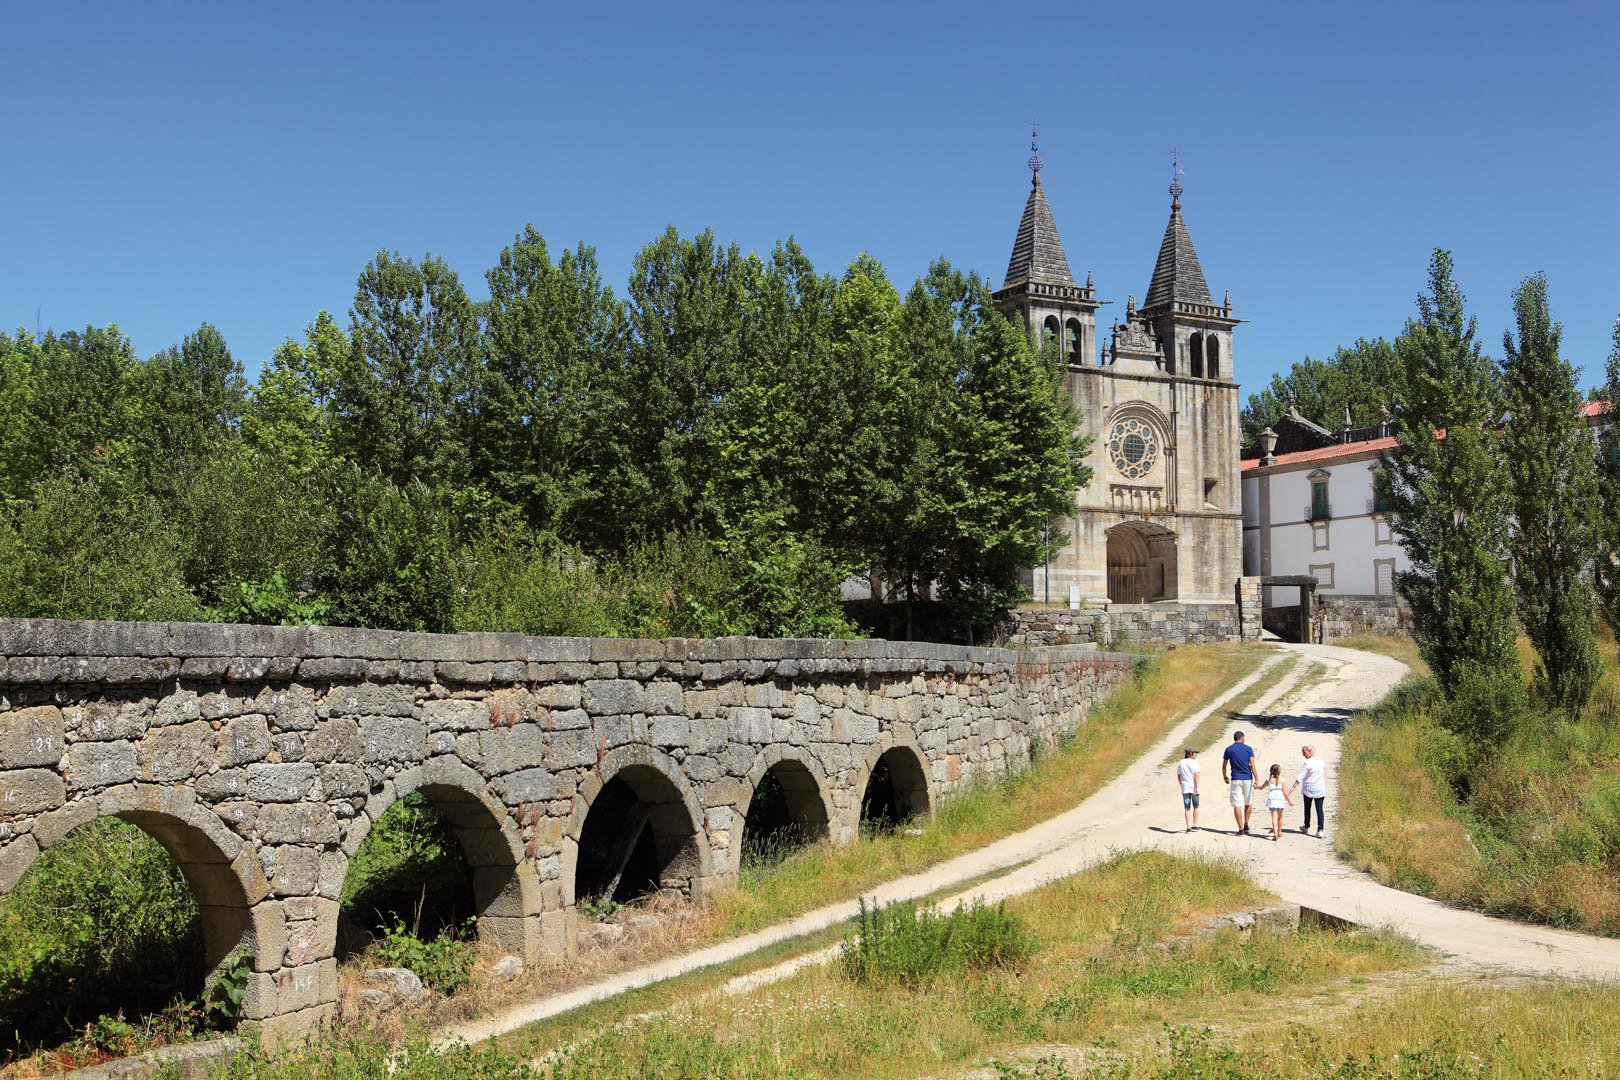 Route of the Romanesque participates in a Turismo de Portugal project